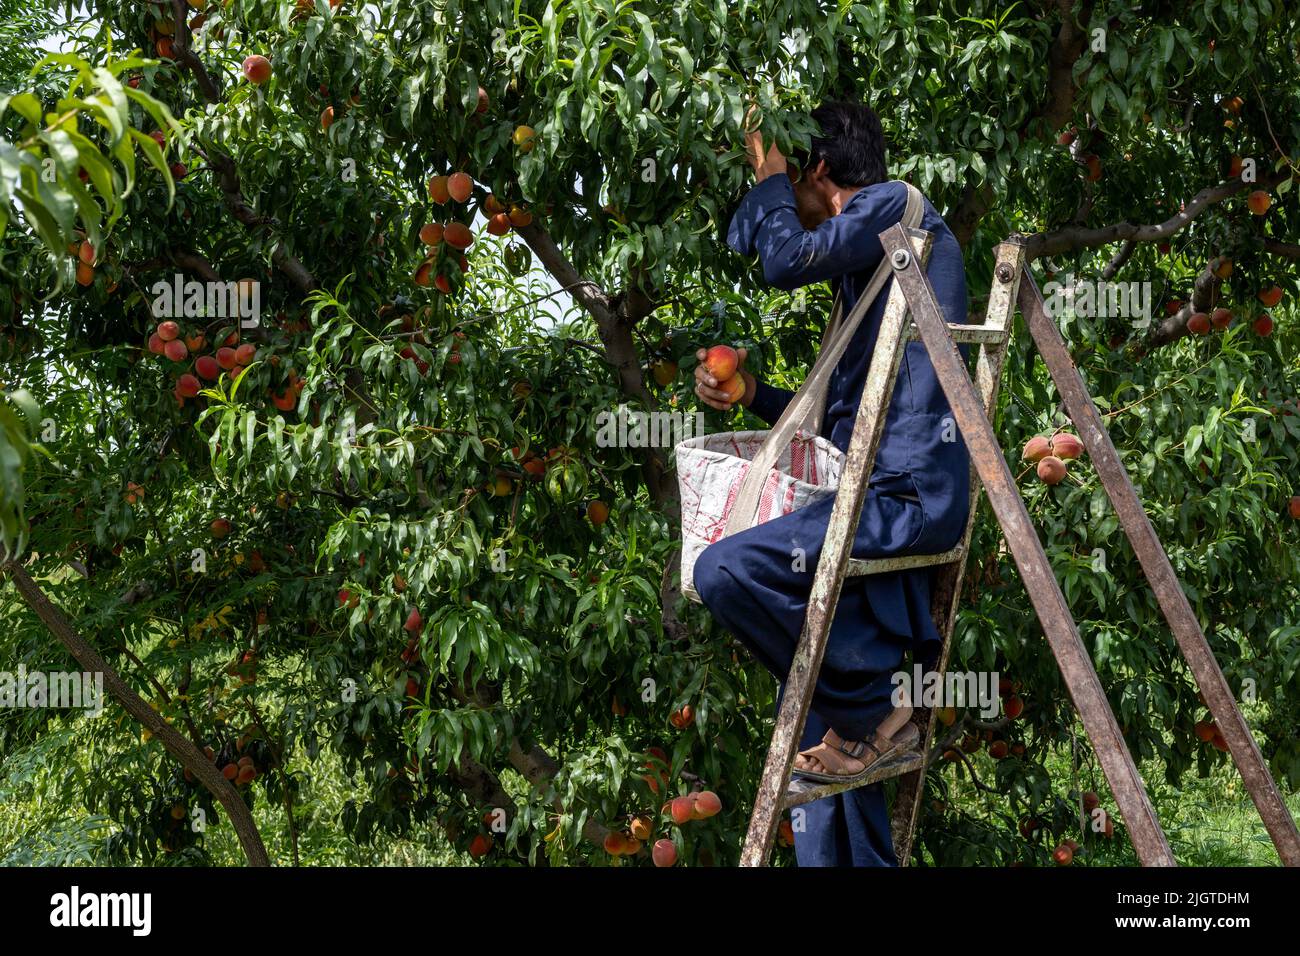 Mann, der in einer Pfirsichfruchtfarm arbeitet und Pfirsiche von Bäumen erntet Stockfoto